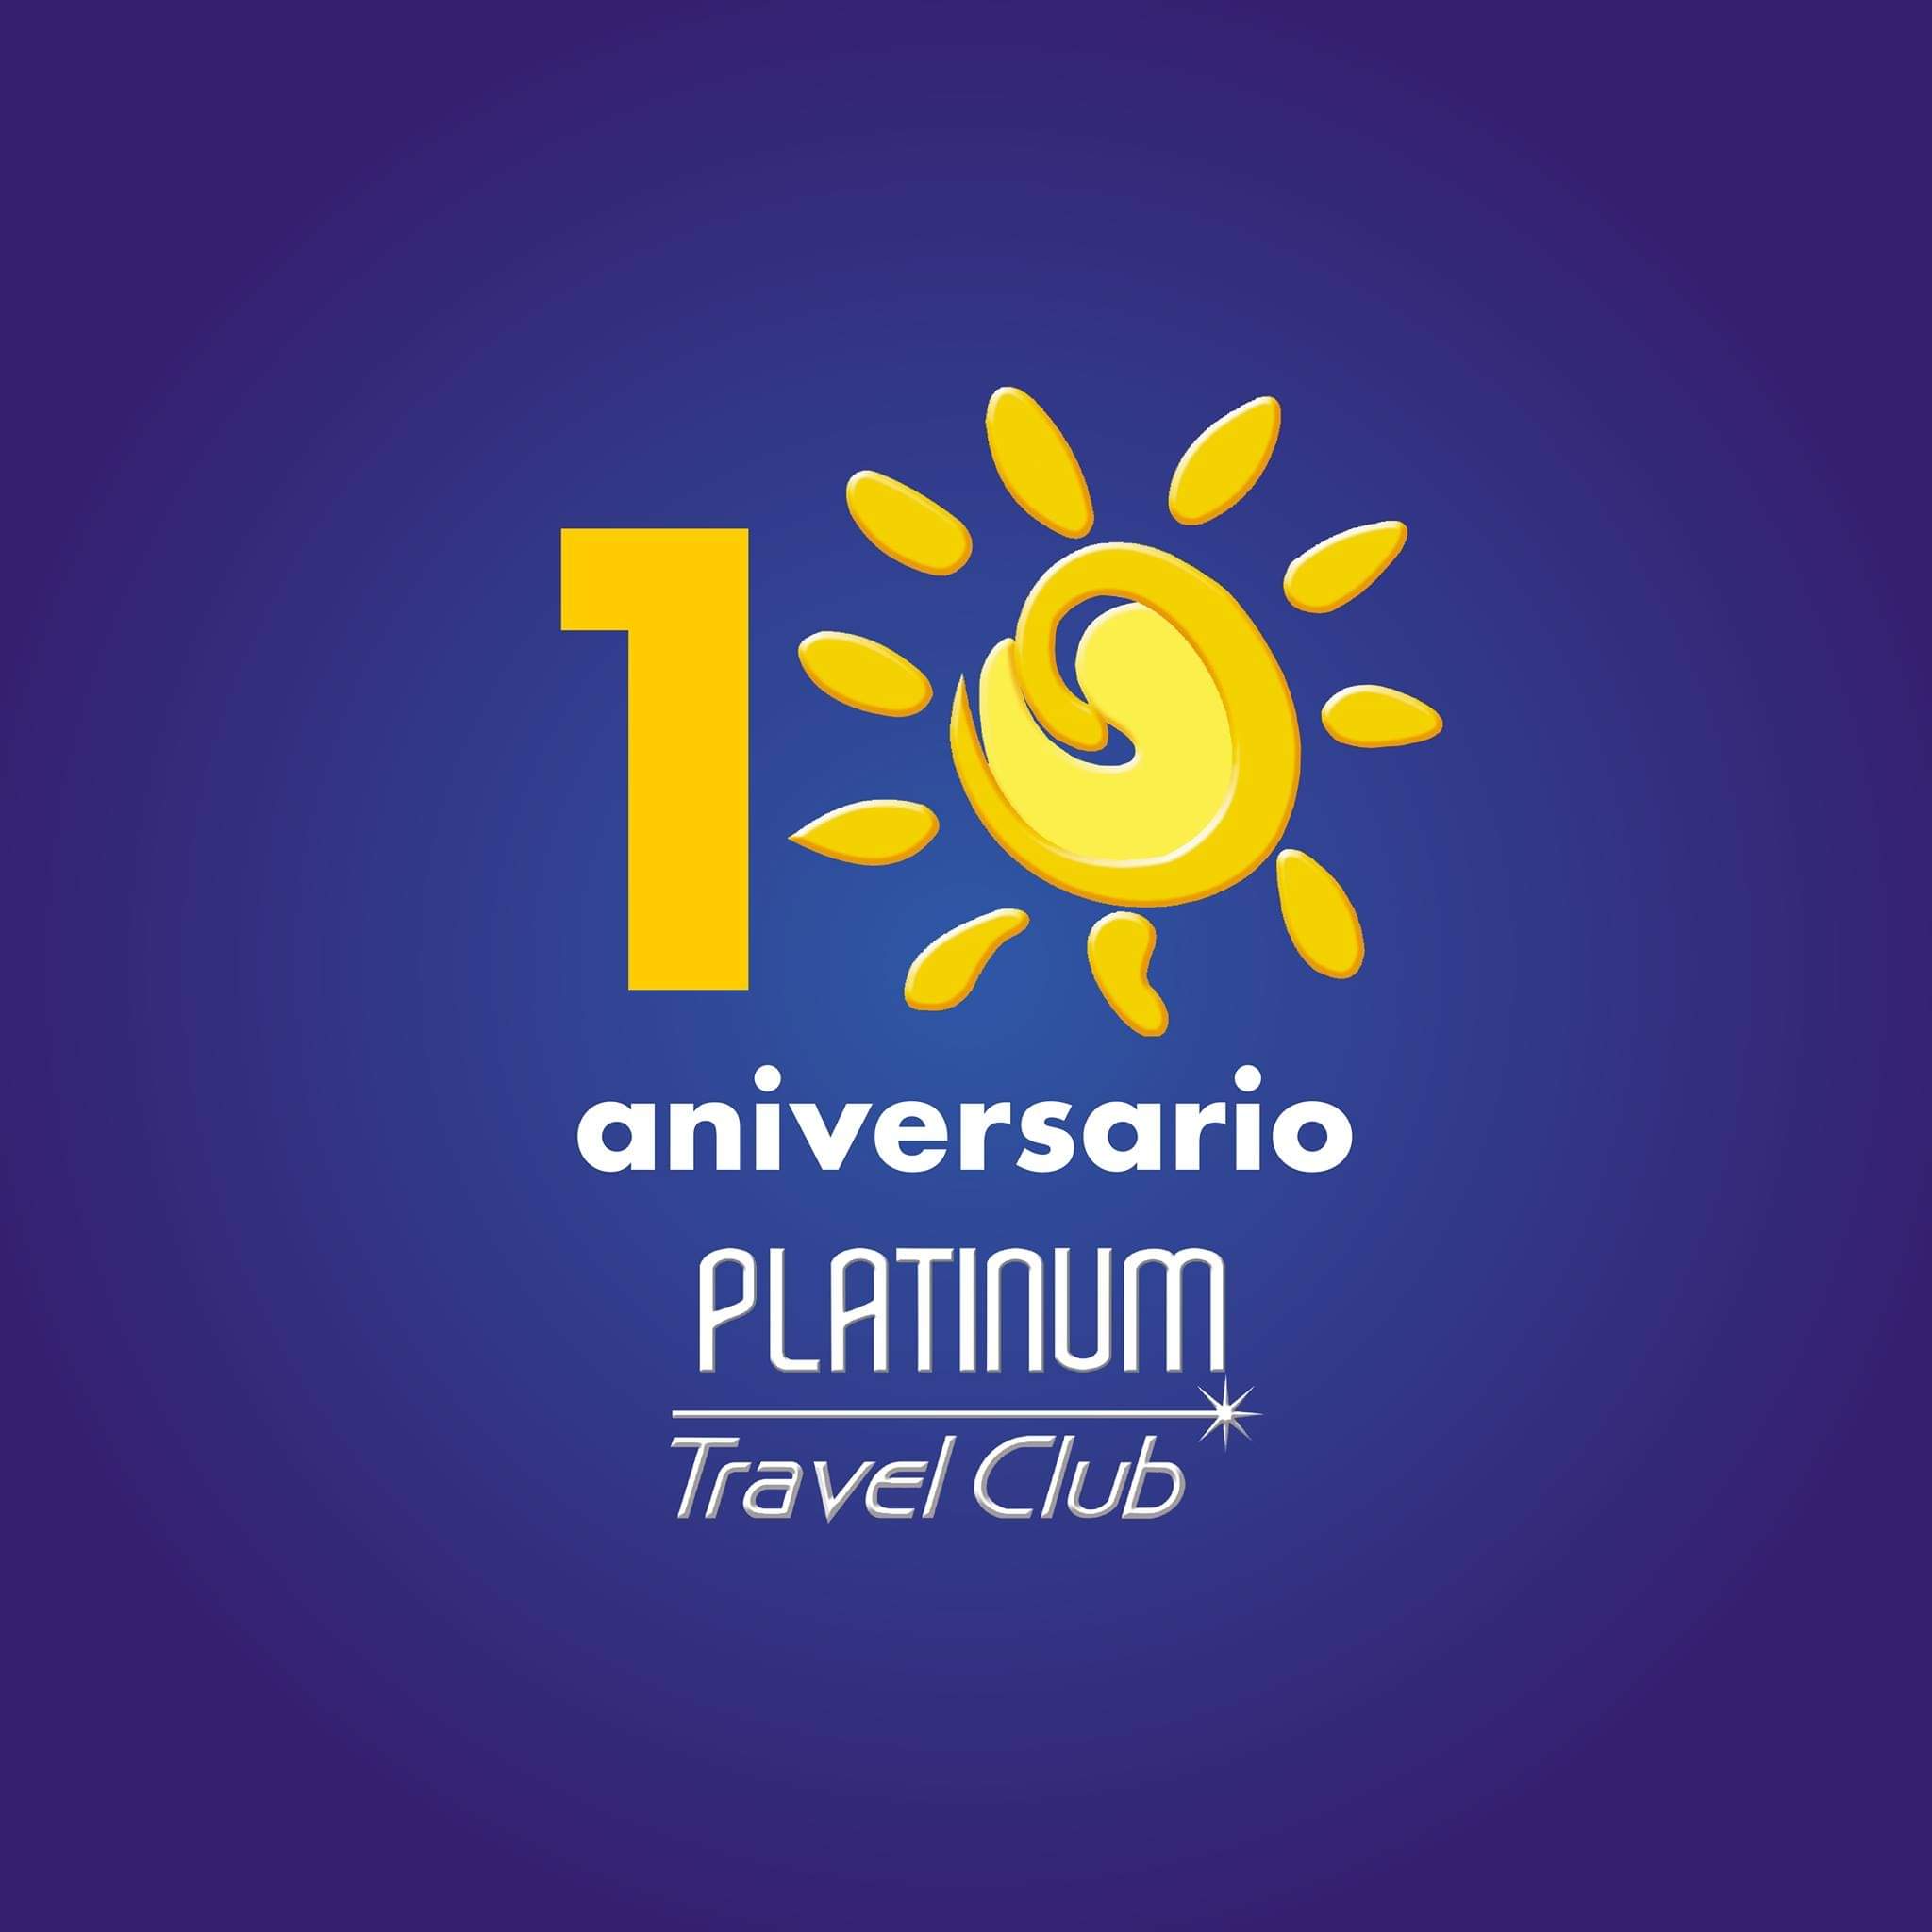 platinum travel club es seguro